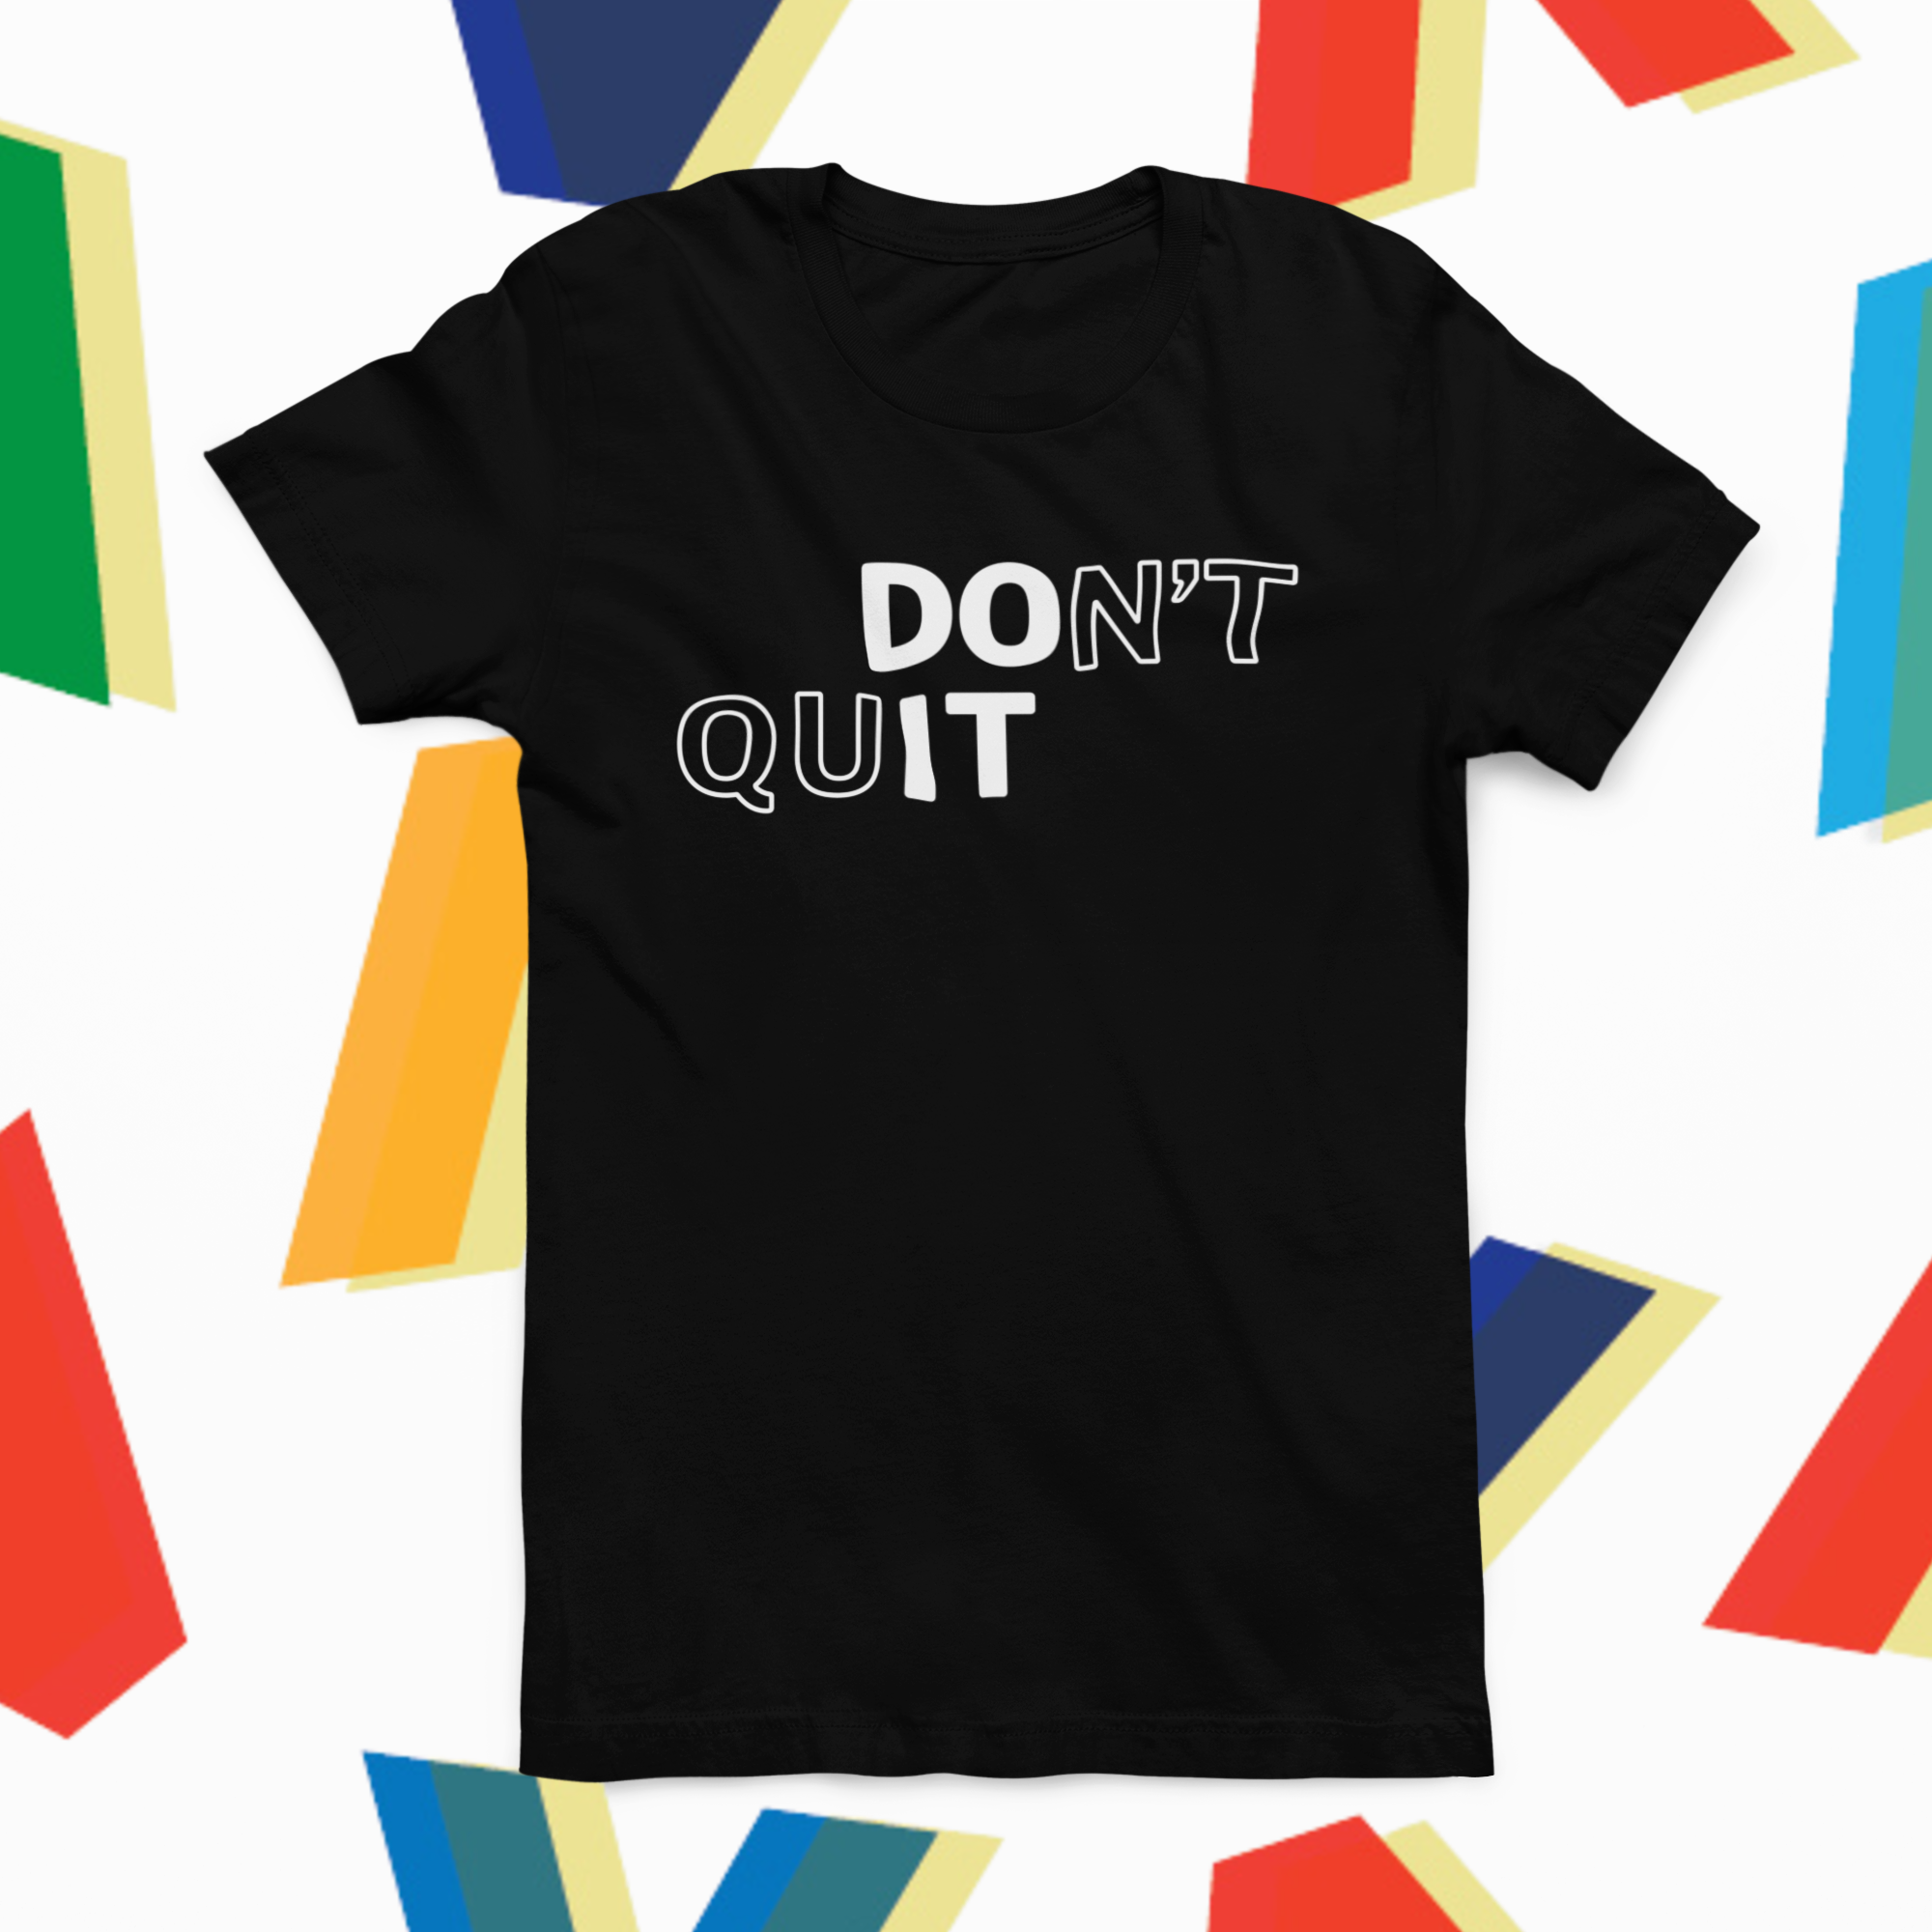 Don't Quit, Do It!